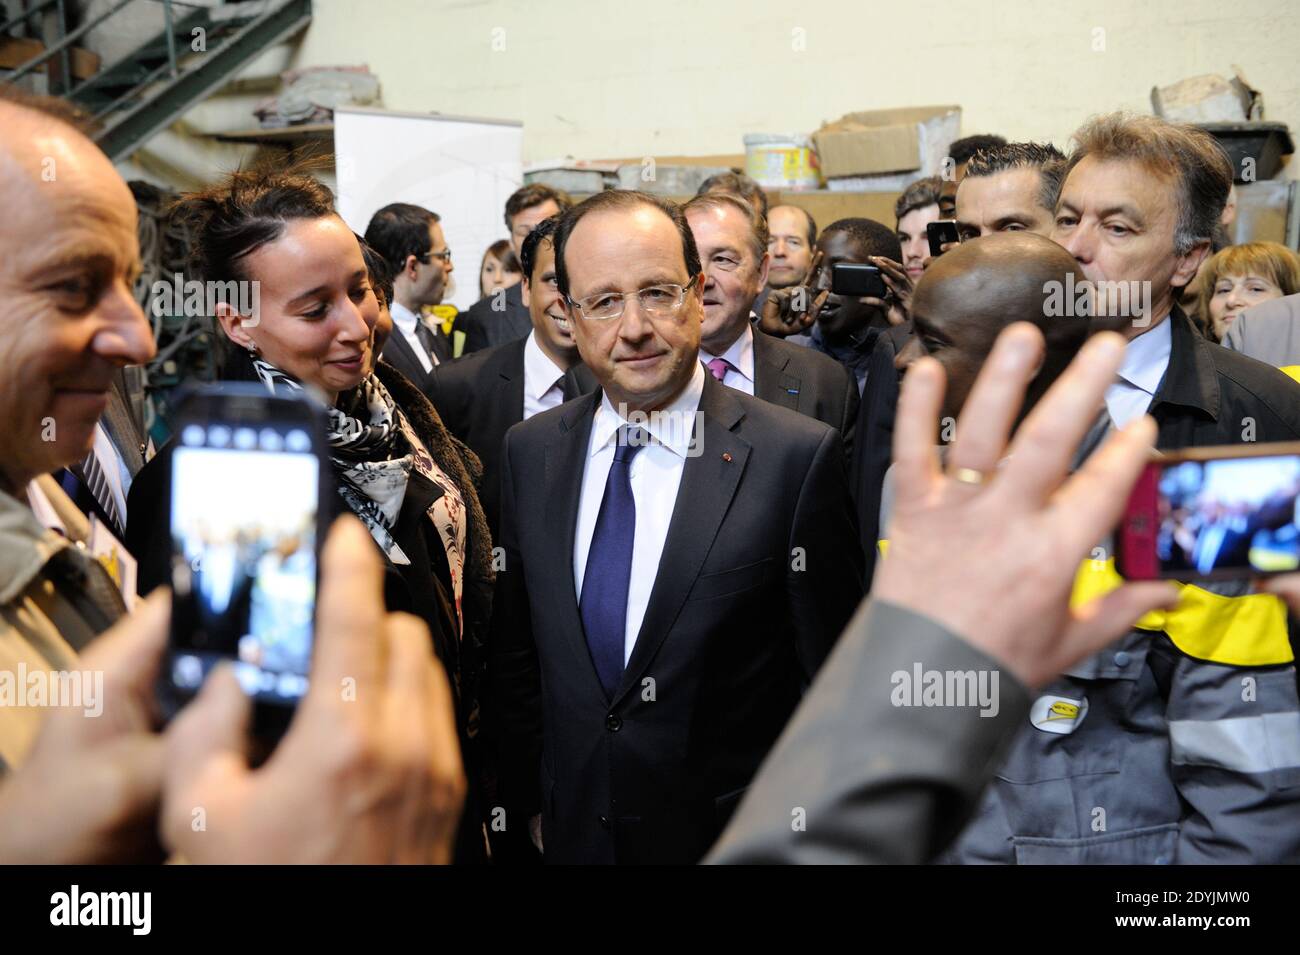 Il presidente francese Francois Hollande visita la società GCC (società di lavori pubblici per edifici). Les Mureaux, Francia, il 30 aprile 2013. Foto di Jacques Witt/piscina/ABACAPRESS.COM Foto Stock